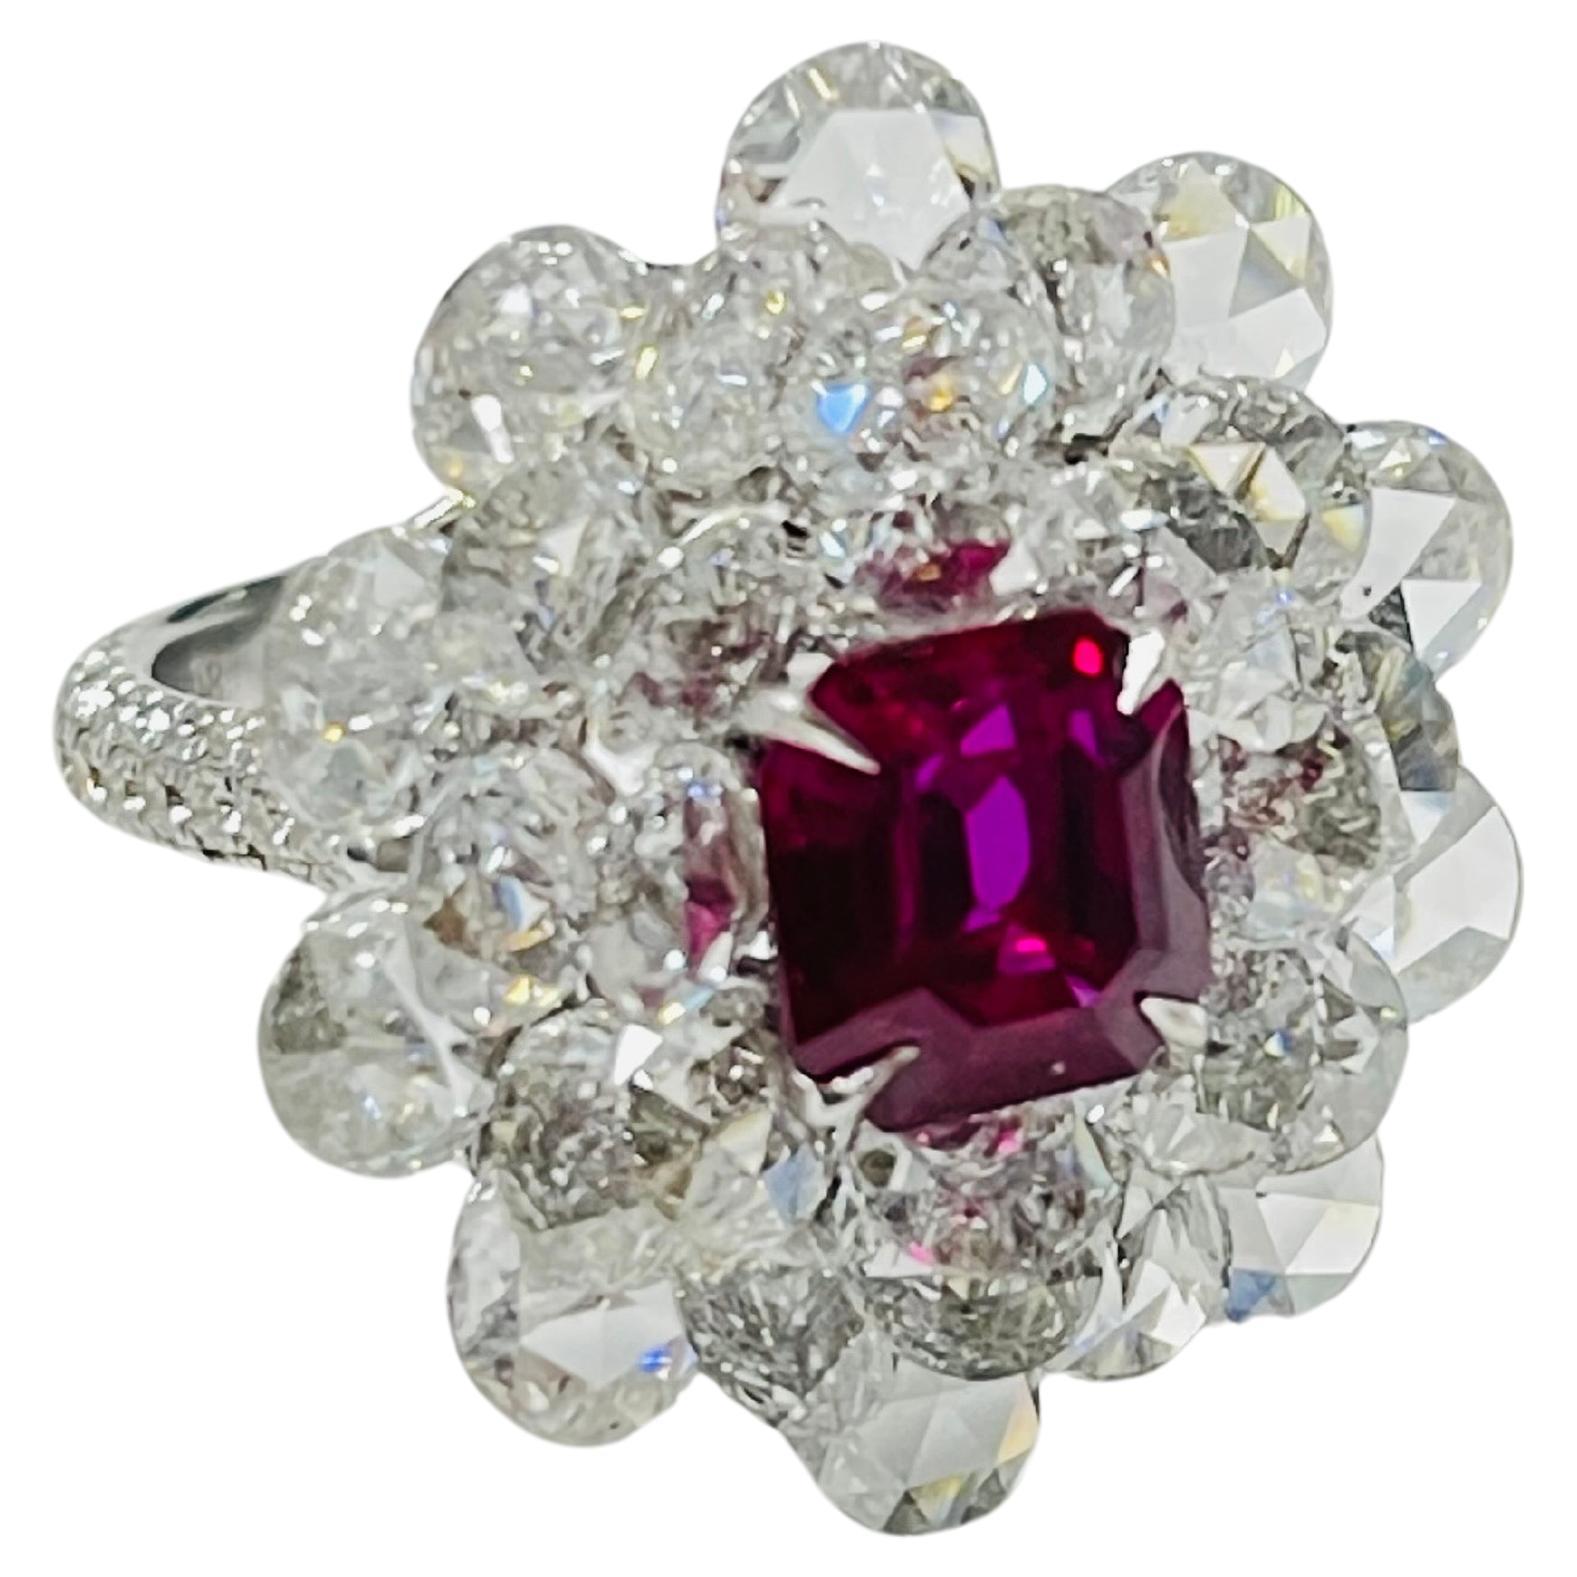 Cette bague unique en son genre présente un magnifique rubis non chauffé de Birmanie de 3,15 carats, certifié Gublin et GIA, niché dans un lit de magnifiques diamants blancs de taille rose pesant 4,54 carats /20 (4,7 mm) et 3,04 carats /10 (5 mm)